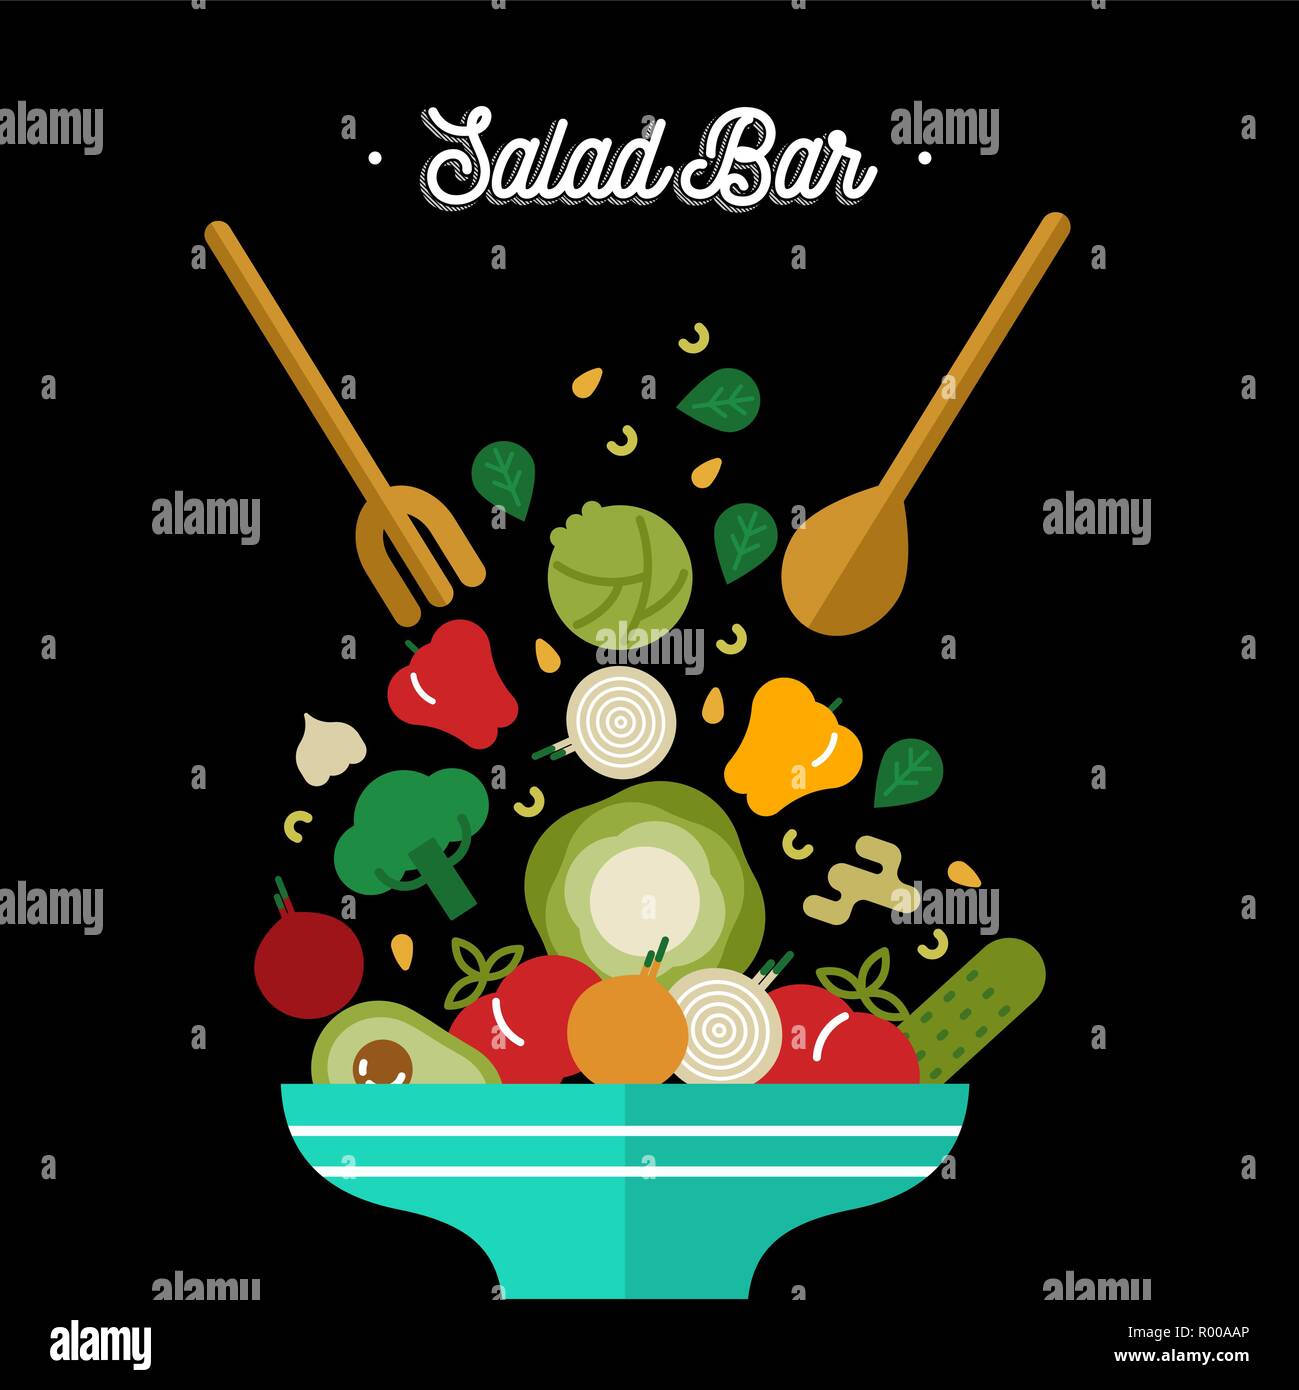 Salatbar Illustration für gesunde Ernährung oder vegetarische Ernährung Konzept. Pflanzliche Nahrung Mix in bunten Flat Style. Stock Vektor